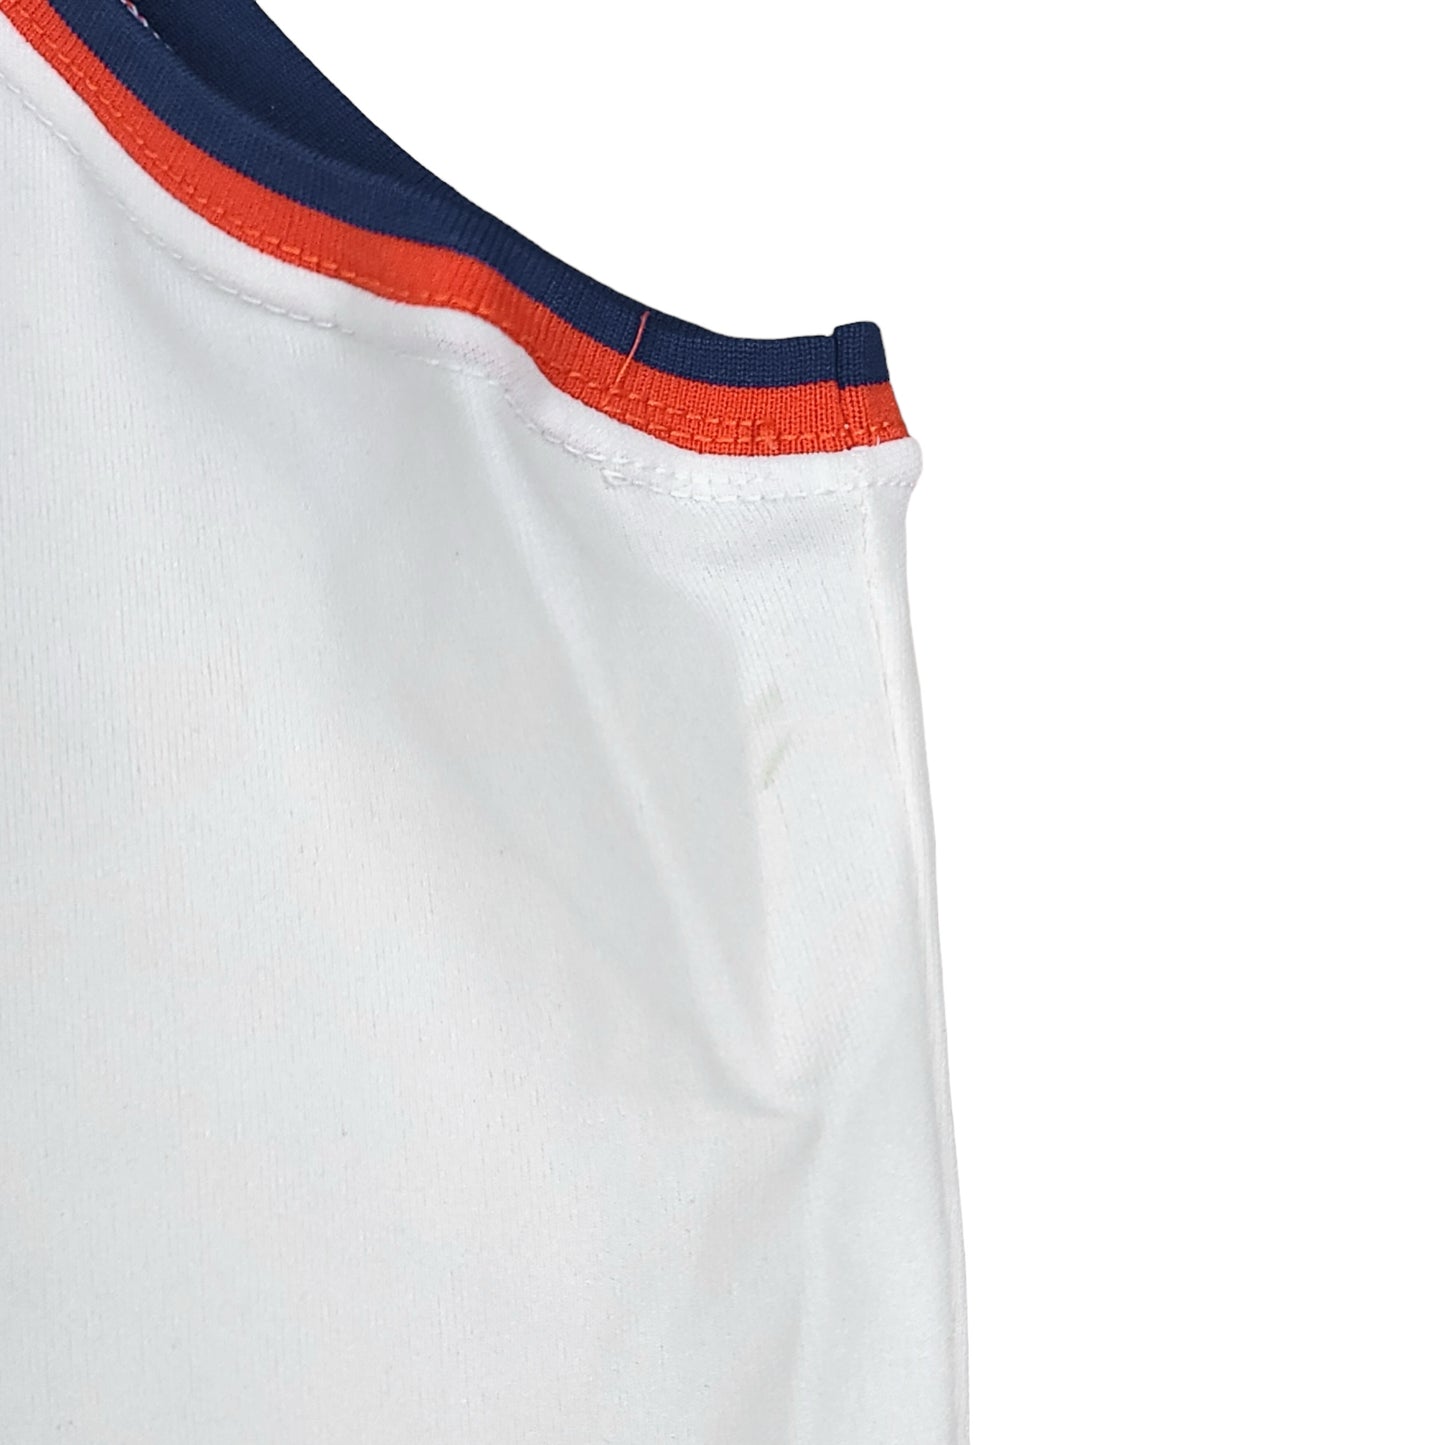 Vintage Patrick Ewing New York Knicks #33 White Sand Knit Jersey